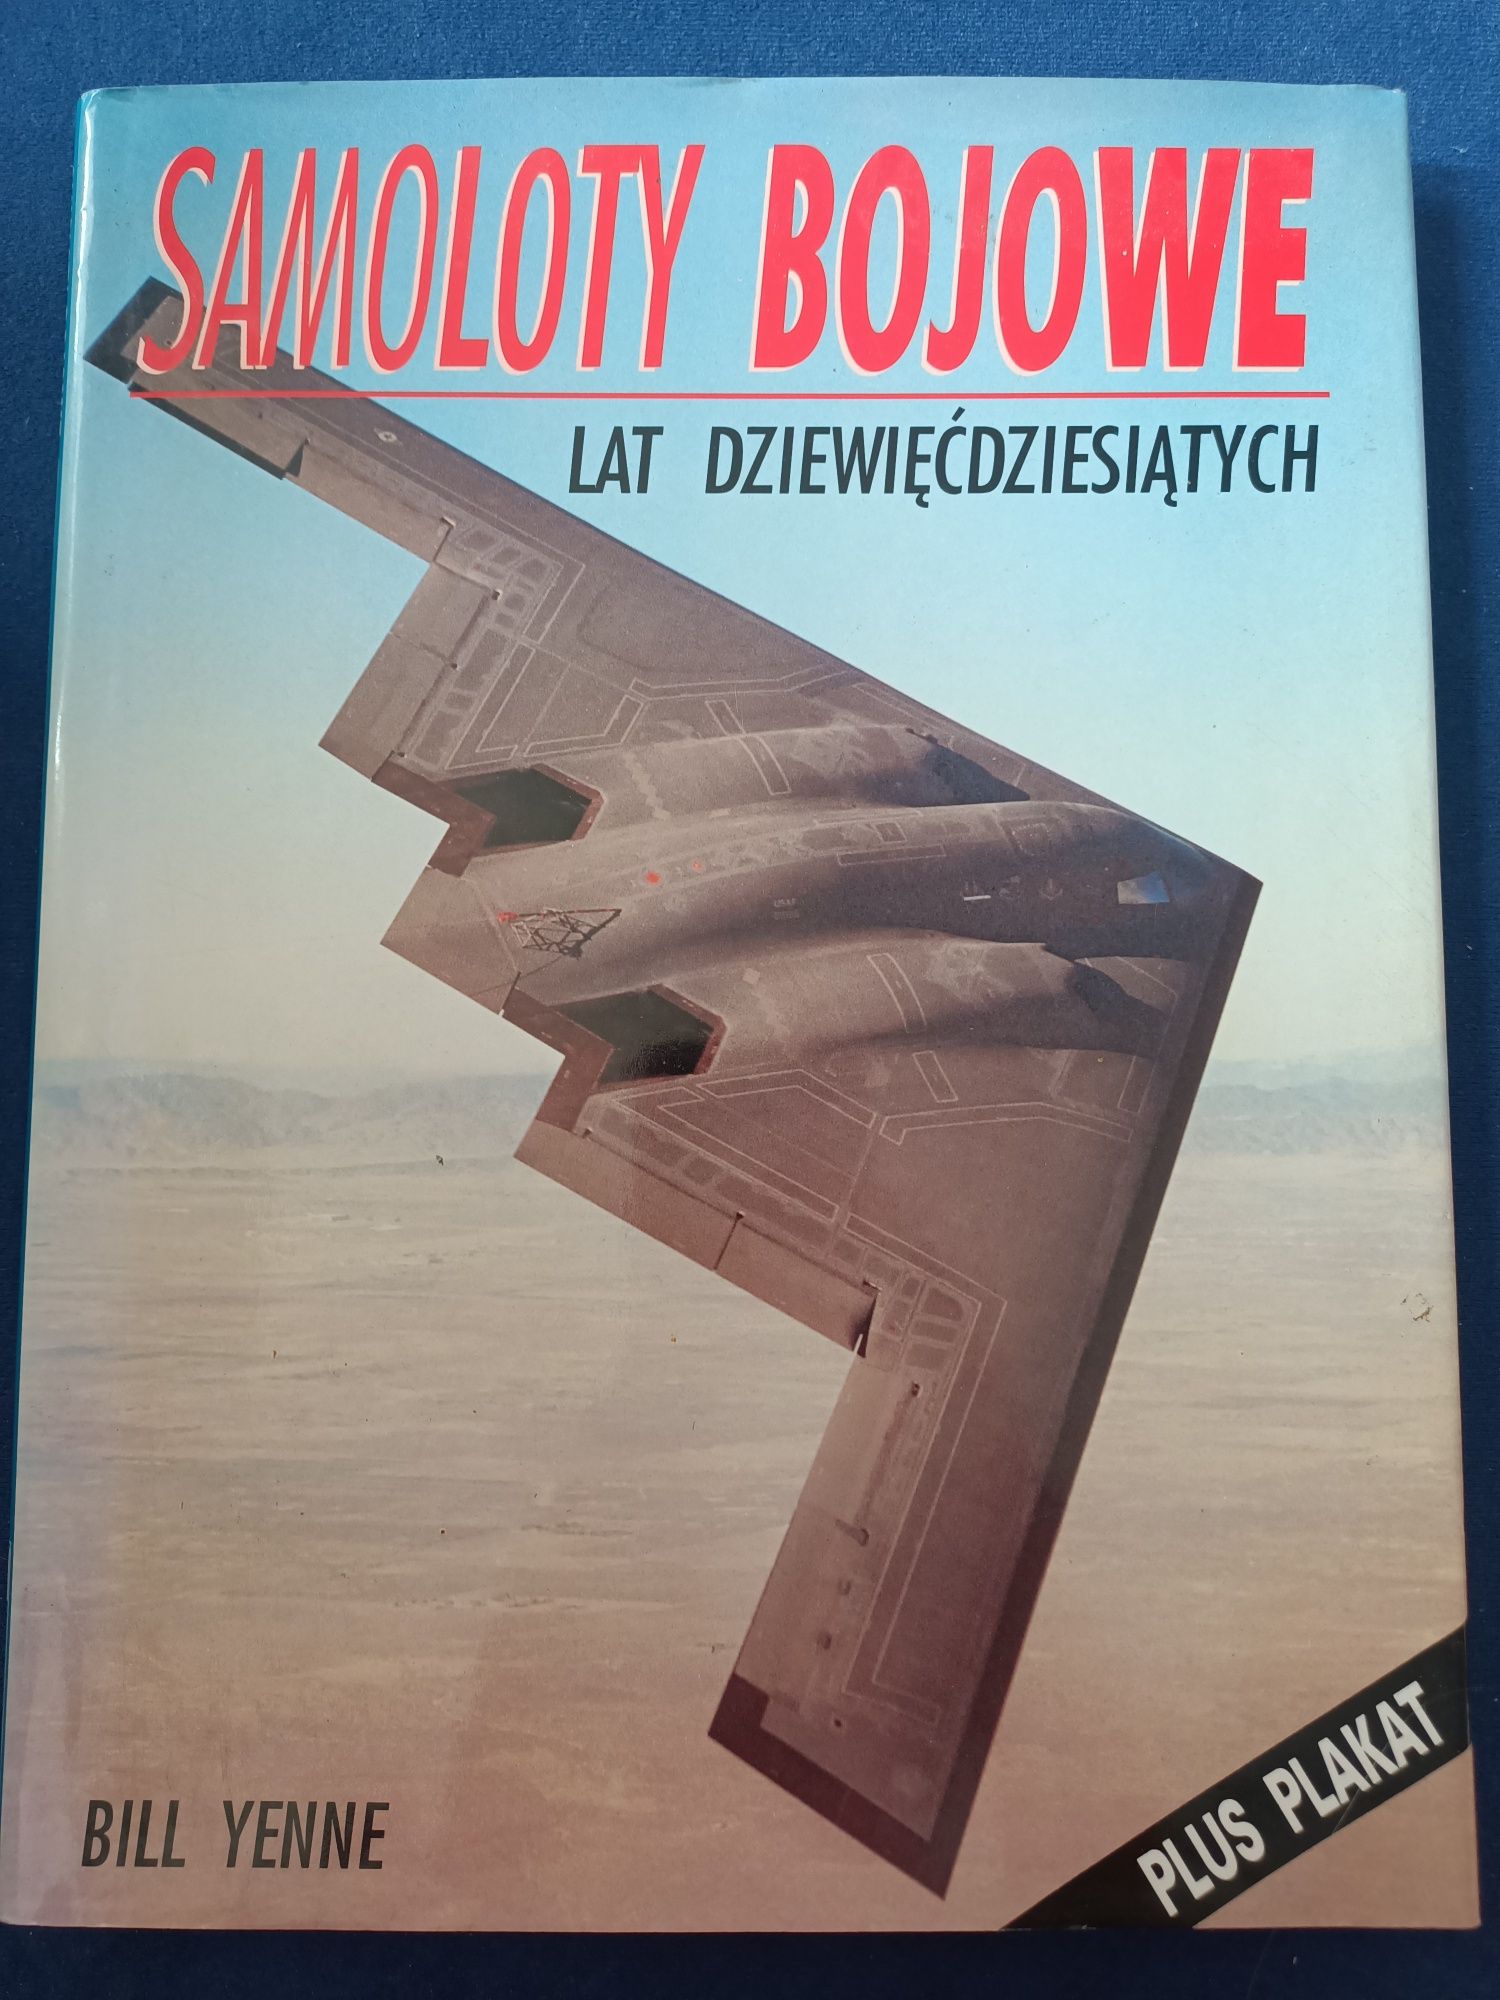 Samoloty bojowe lat dziewięćdziesiątych + plakat Bill Yenne